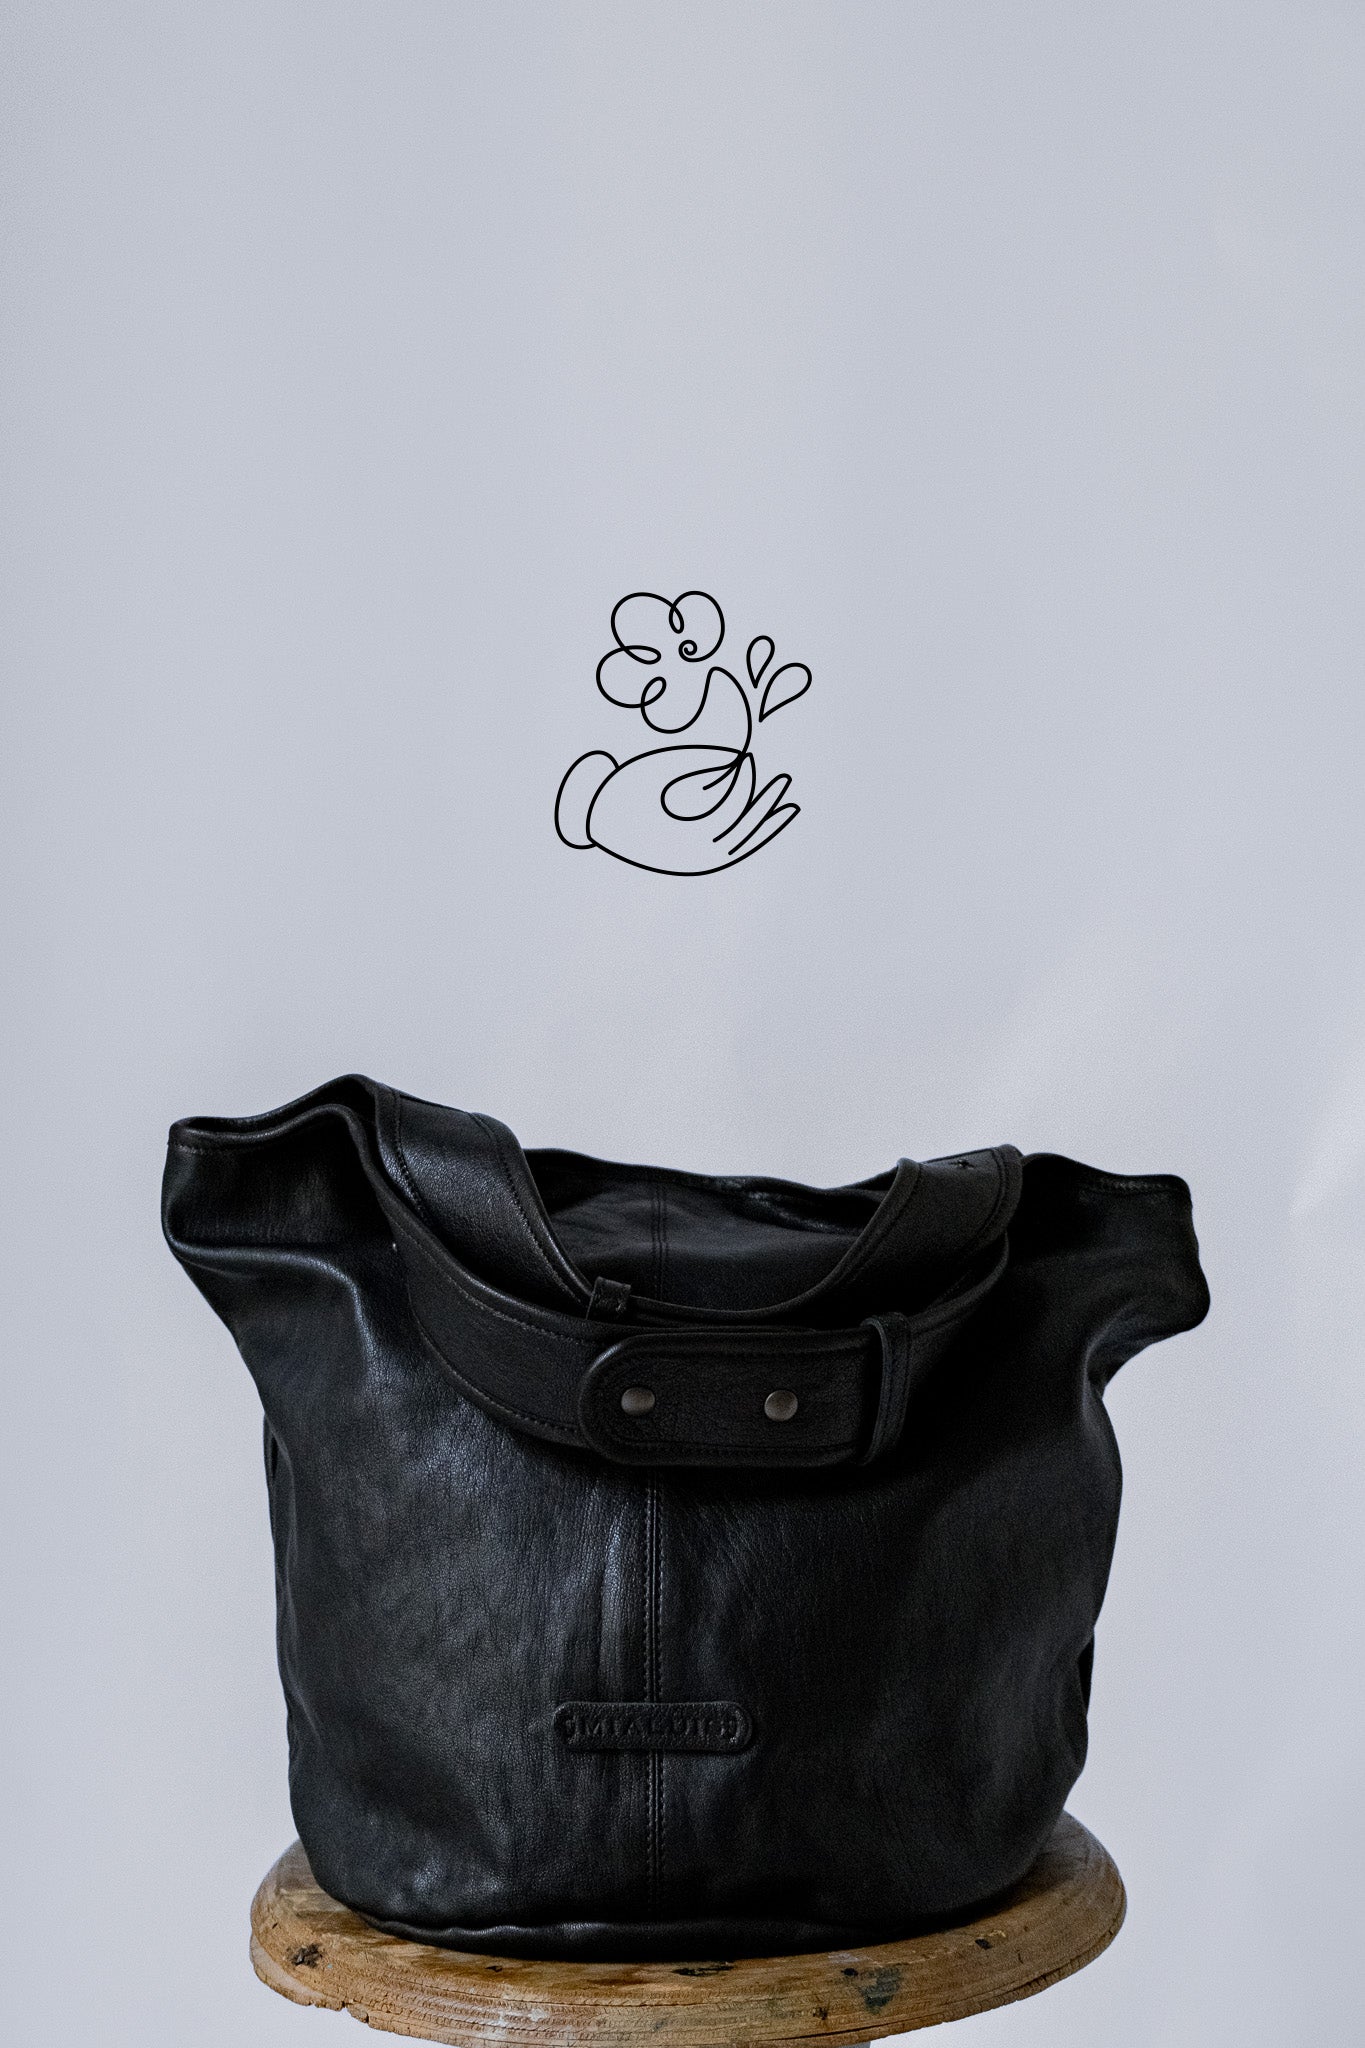 Lena tote bag in black nappa leather | fundraising project for Colori Vivi